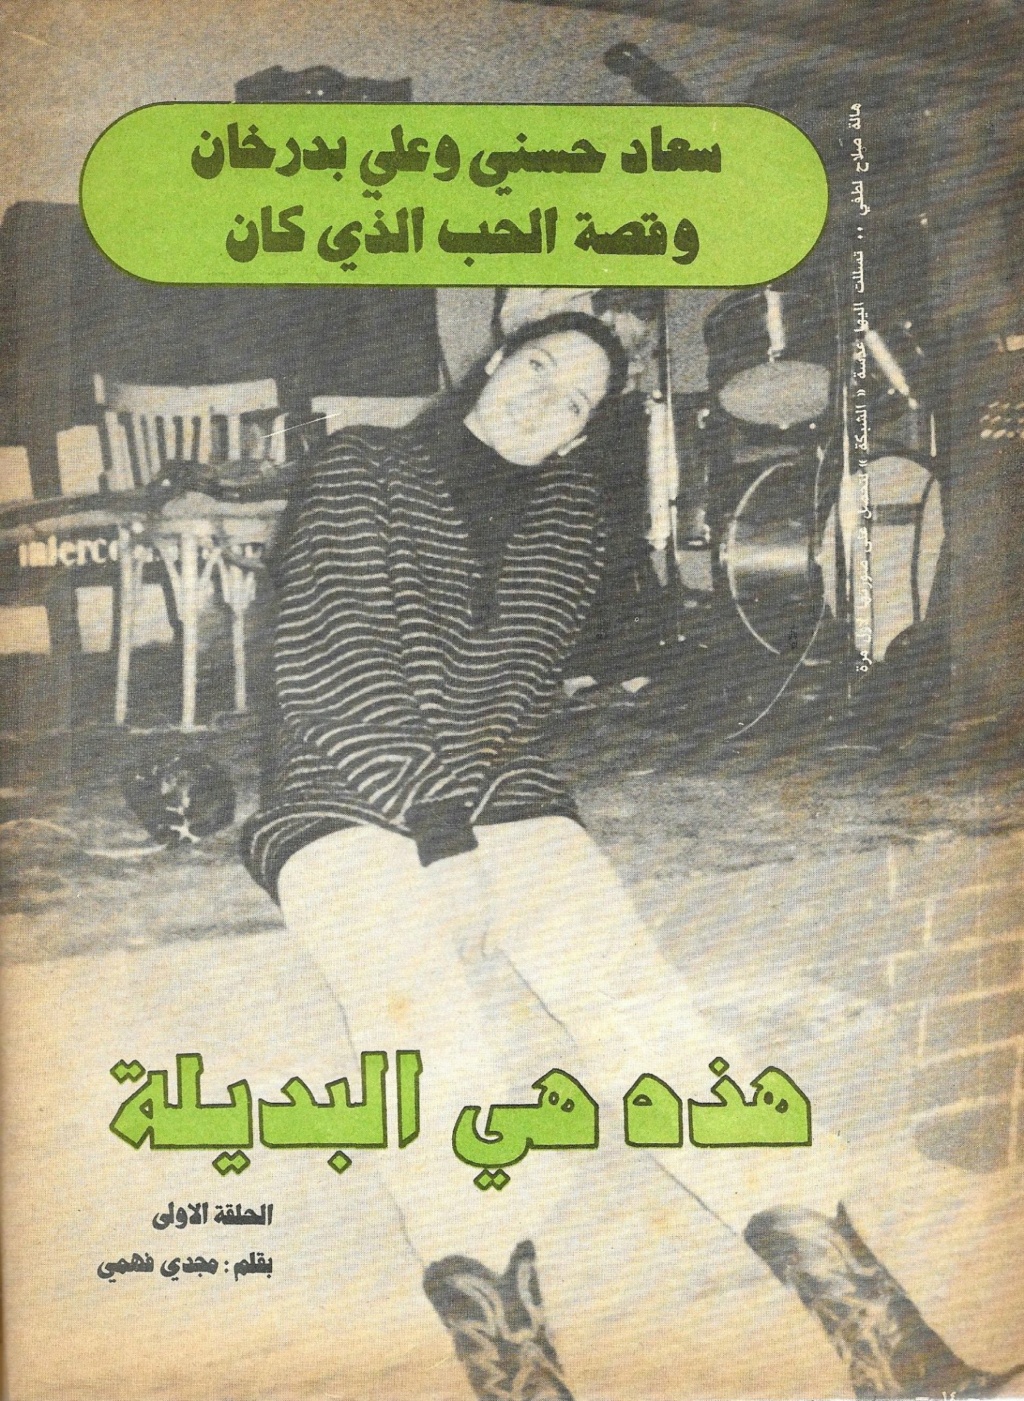 الذي - مقال صحفي : سعاد حسني وعلي بدرخان وقصة الحب الذي كان 1981 م 145